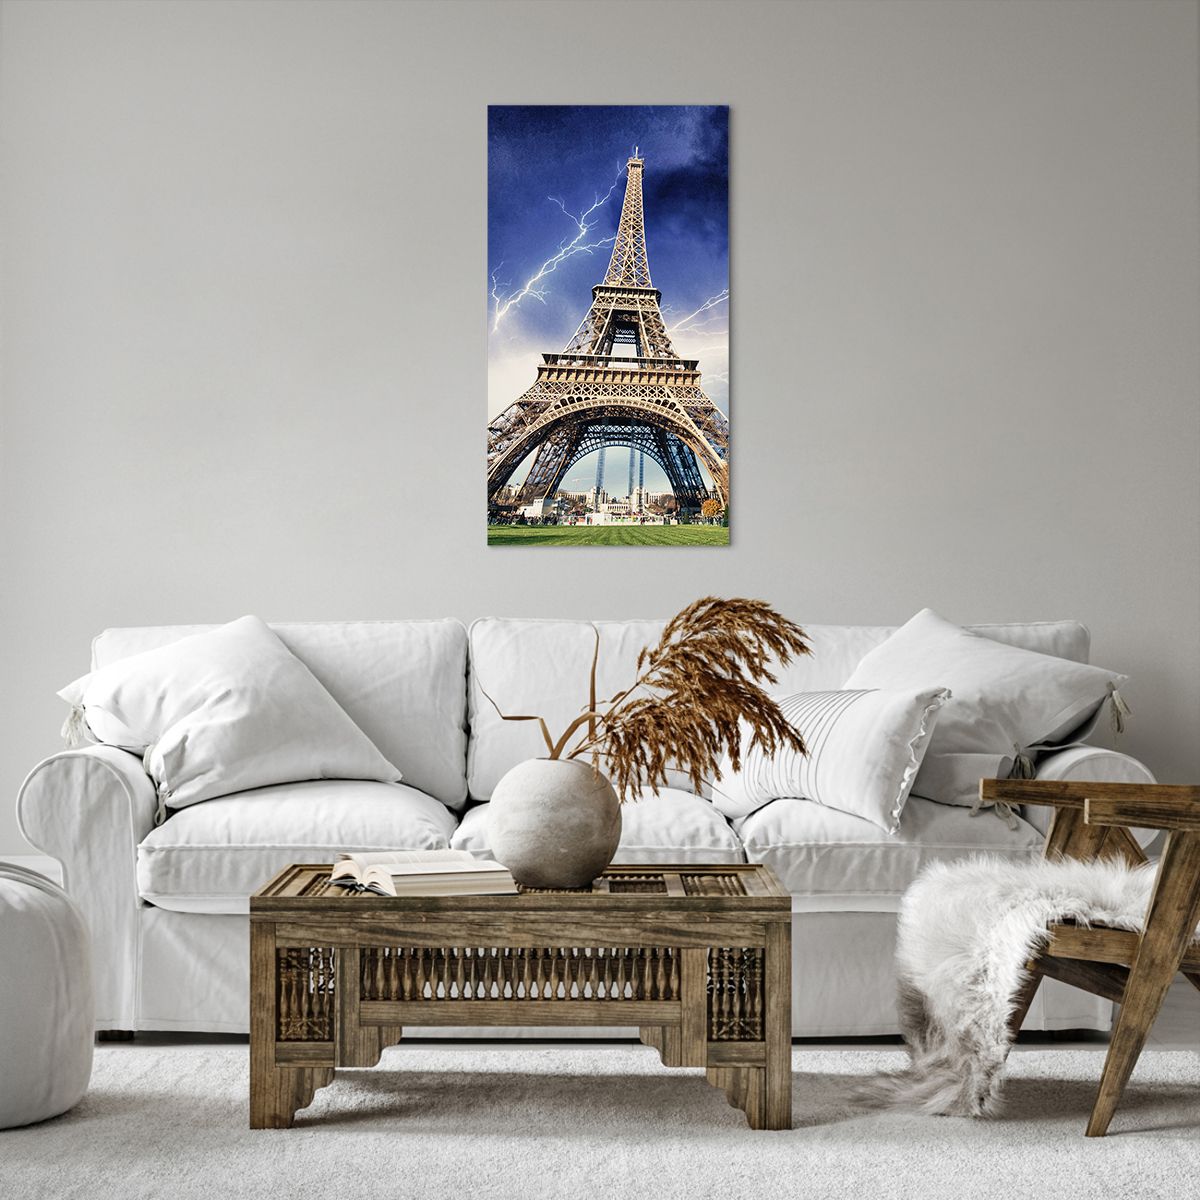 Impression sur toile Ville, Impression sur toile Paris, Impression sur toile Tour Eiffel, Impression sur toile Architecture, Impression sur toile Tempête